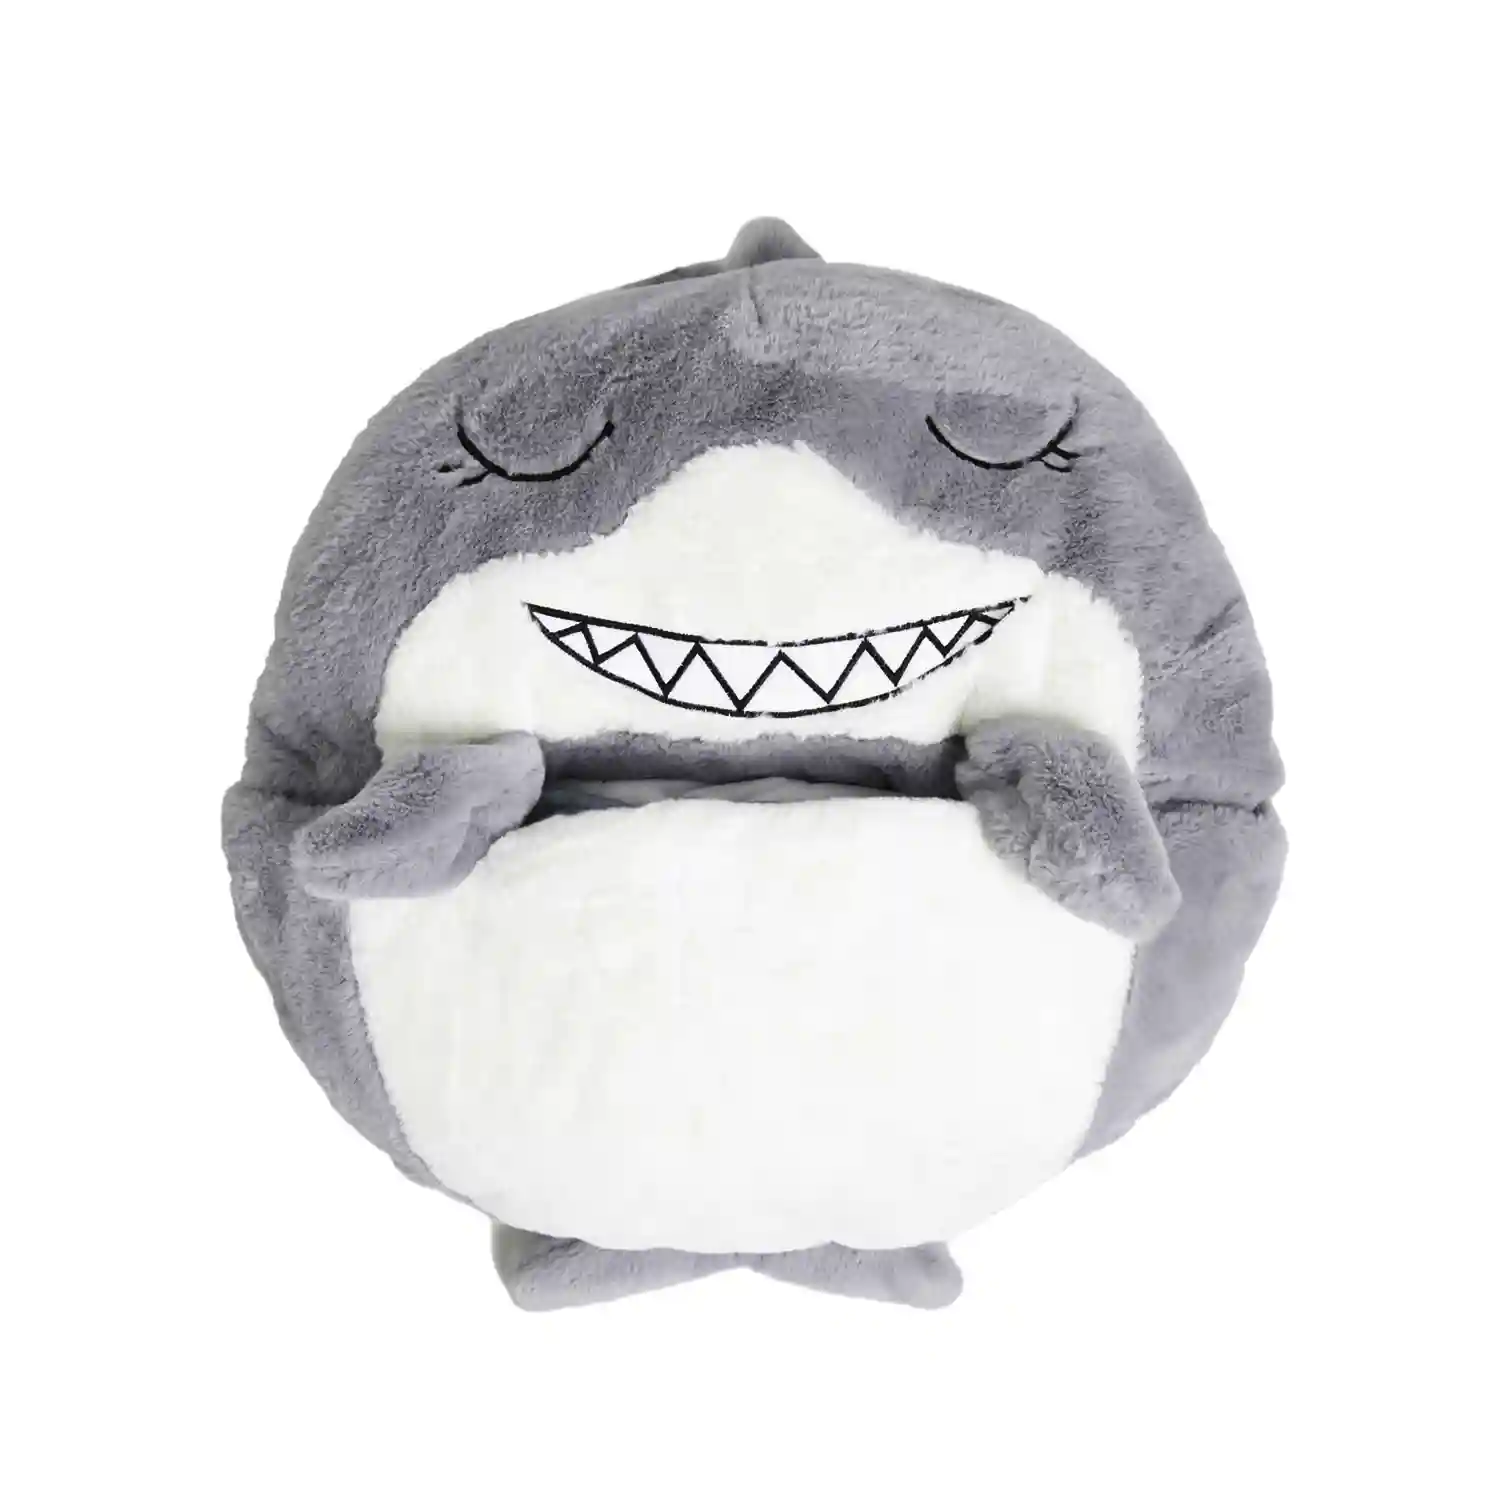 Saco de dormir tiburón para niños